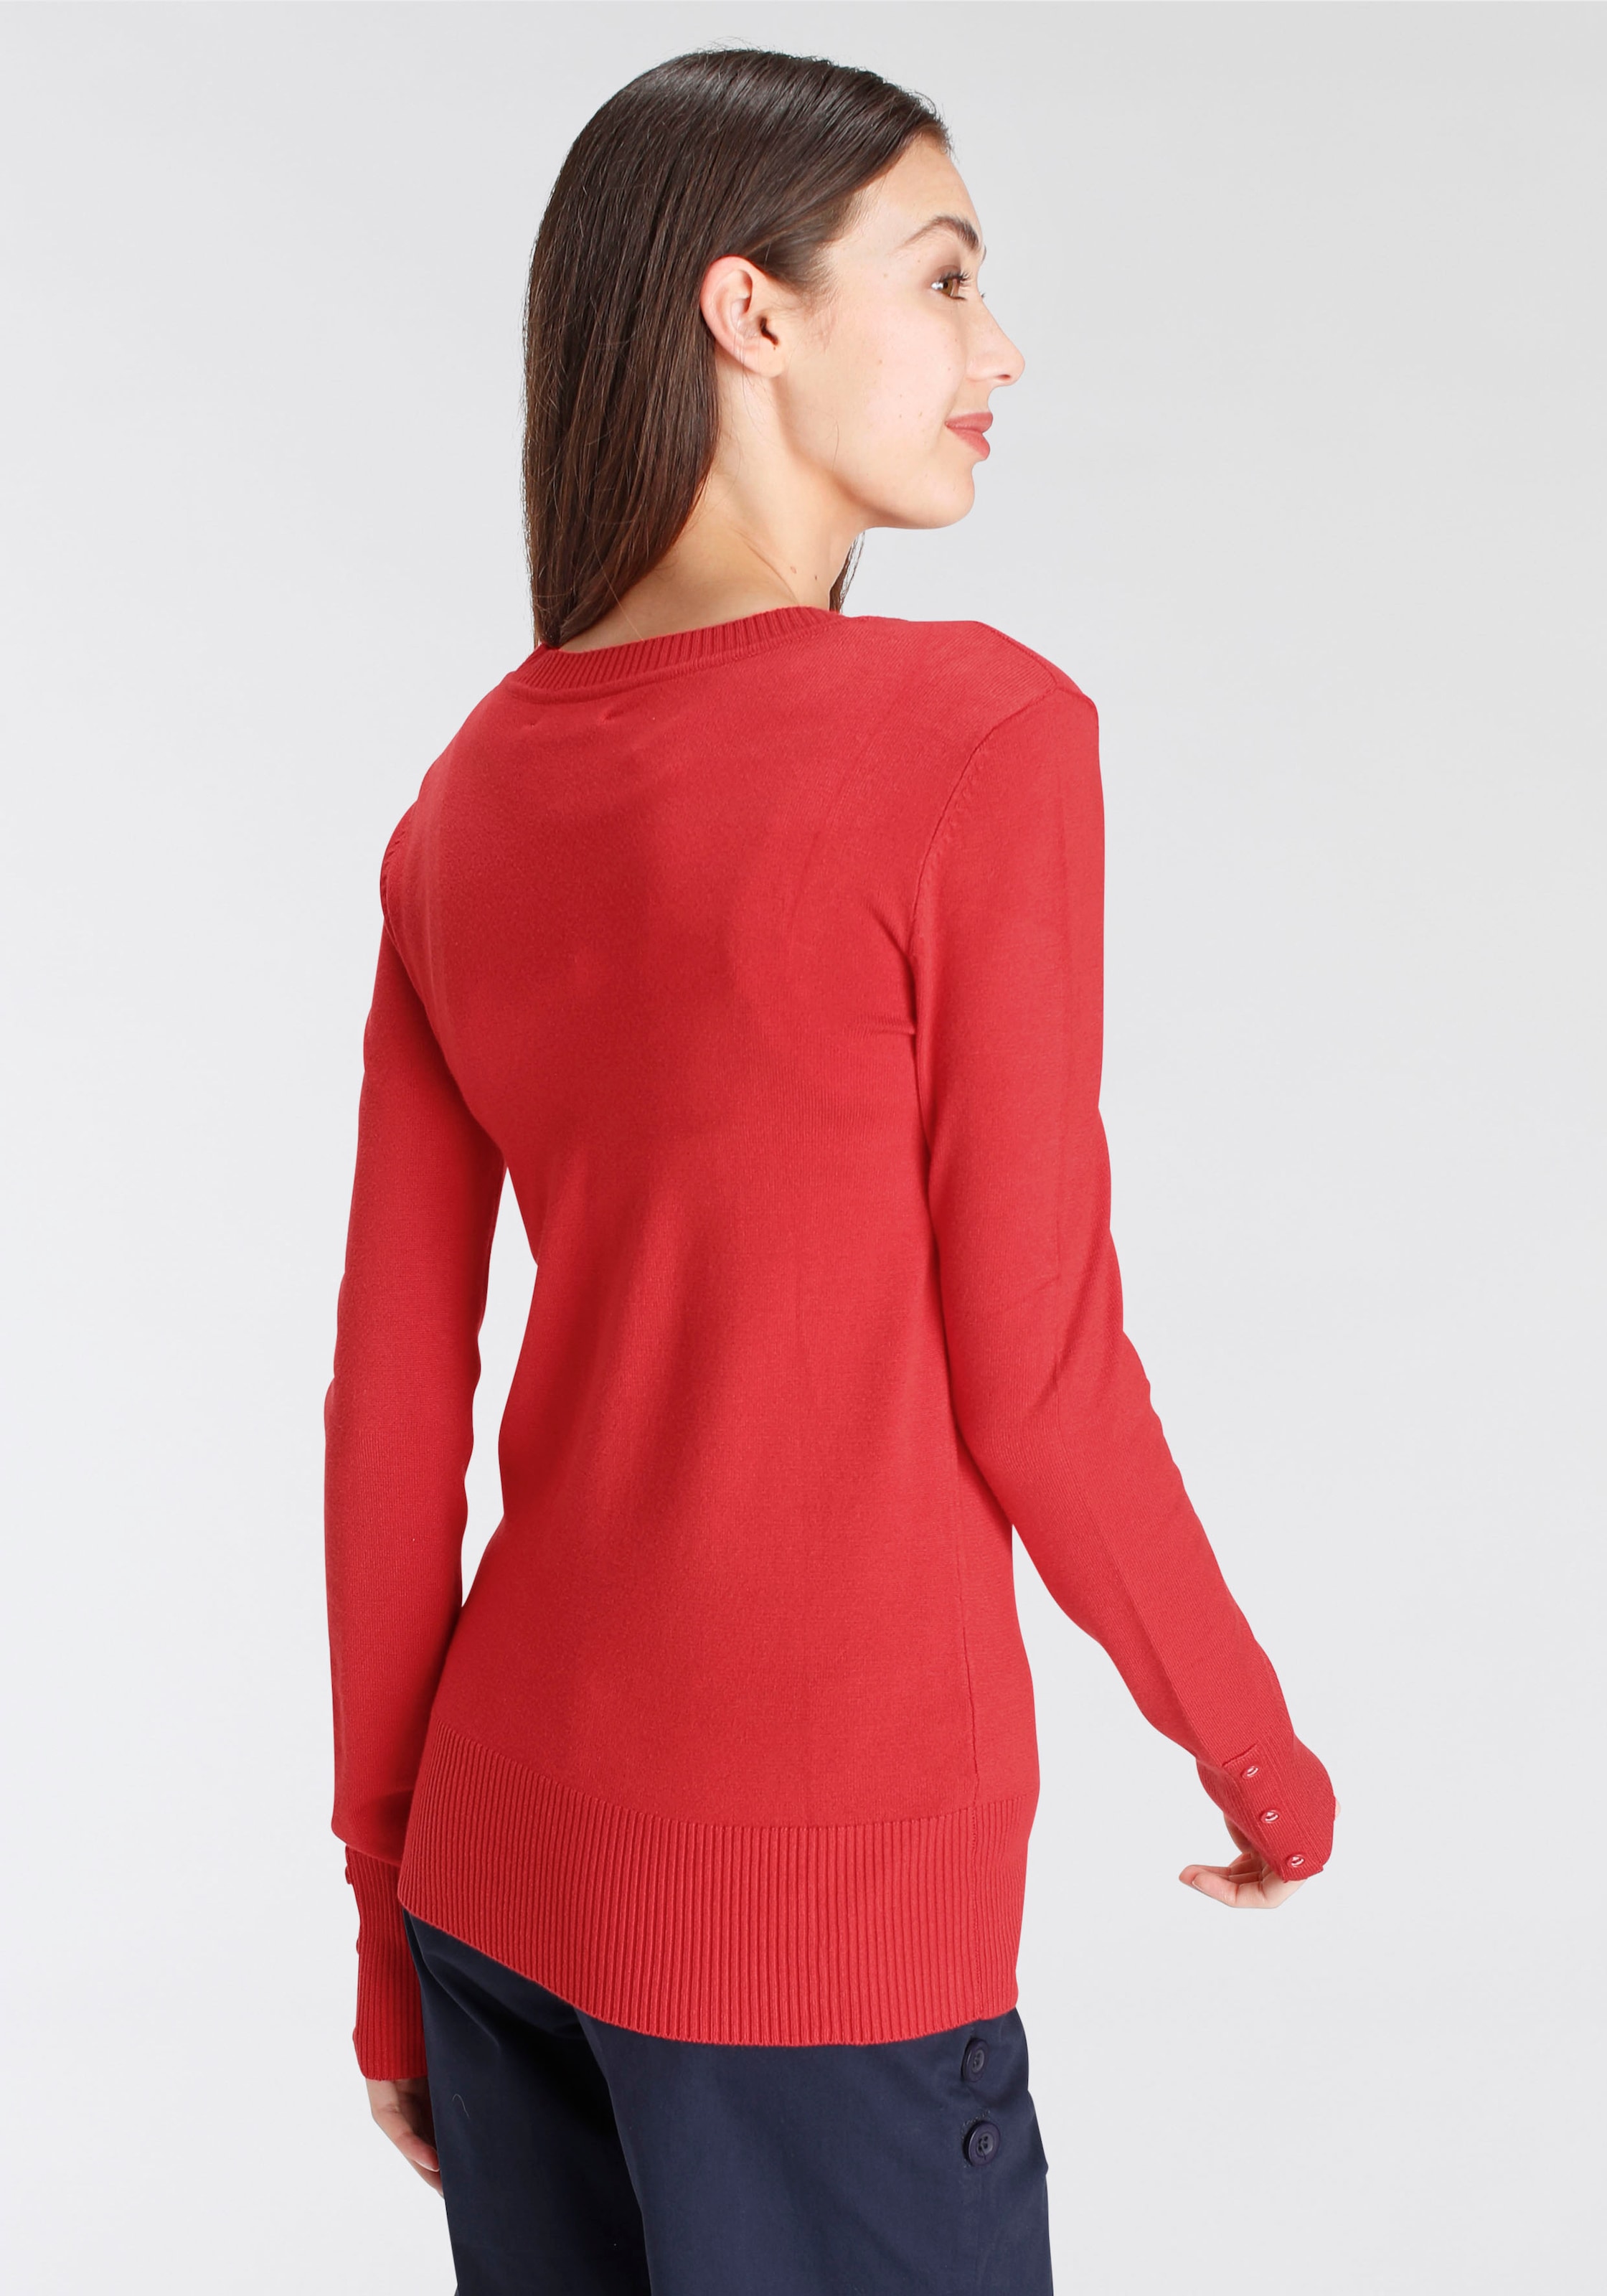 DELMAO V-Ausschnitt-Pullover, mit kleinem Logodruck auf der Brust - NEUE MARKE!